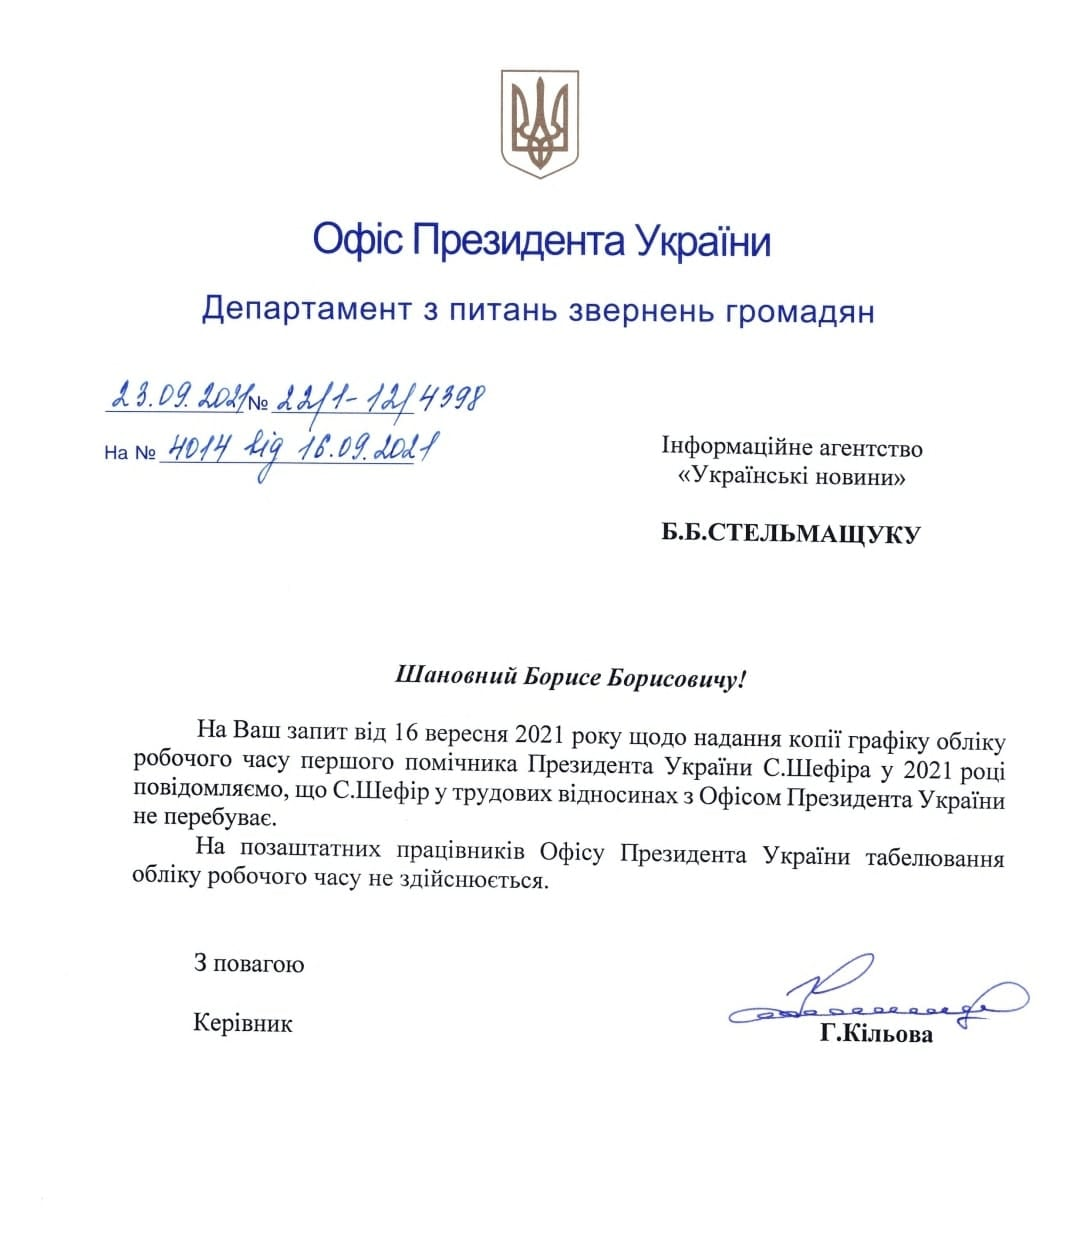 Письмо, которое обнародовал Владимир Бойко